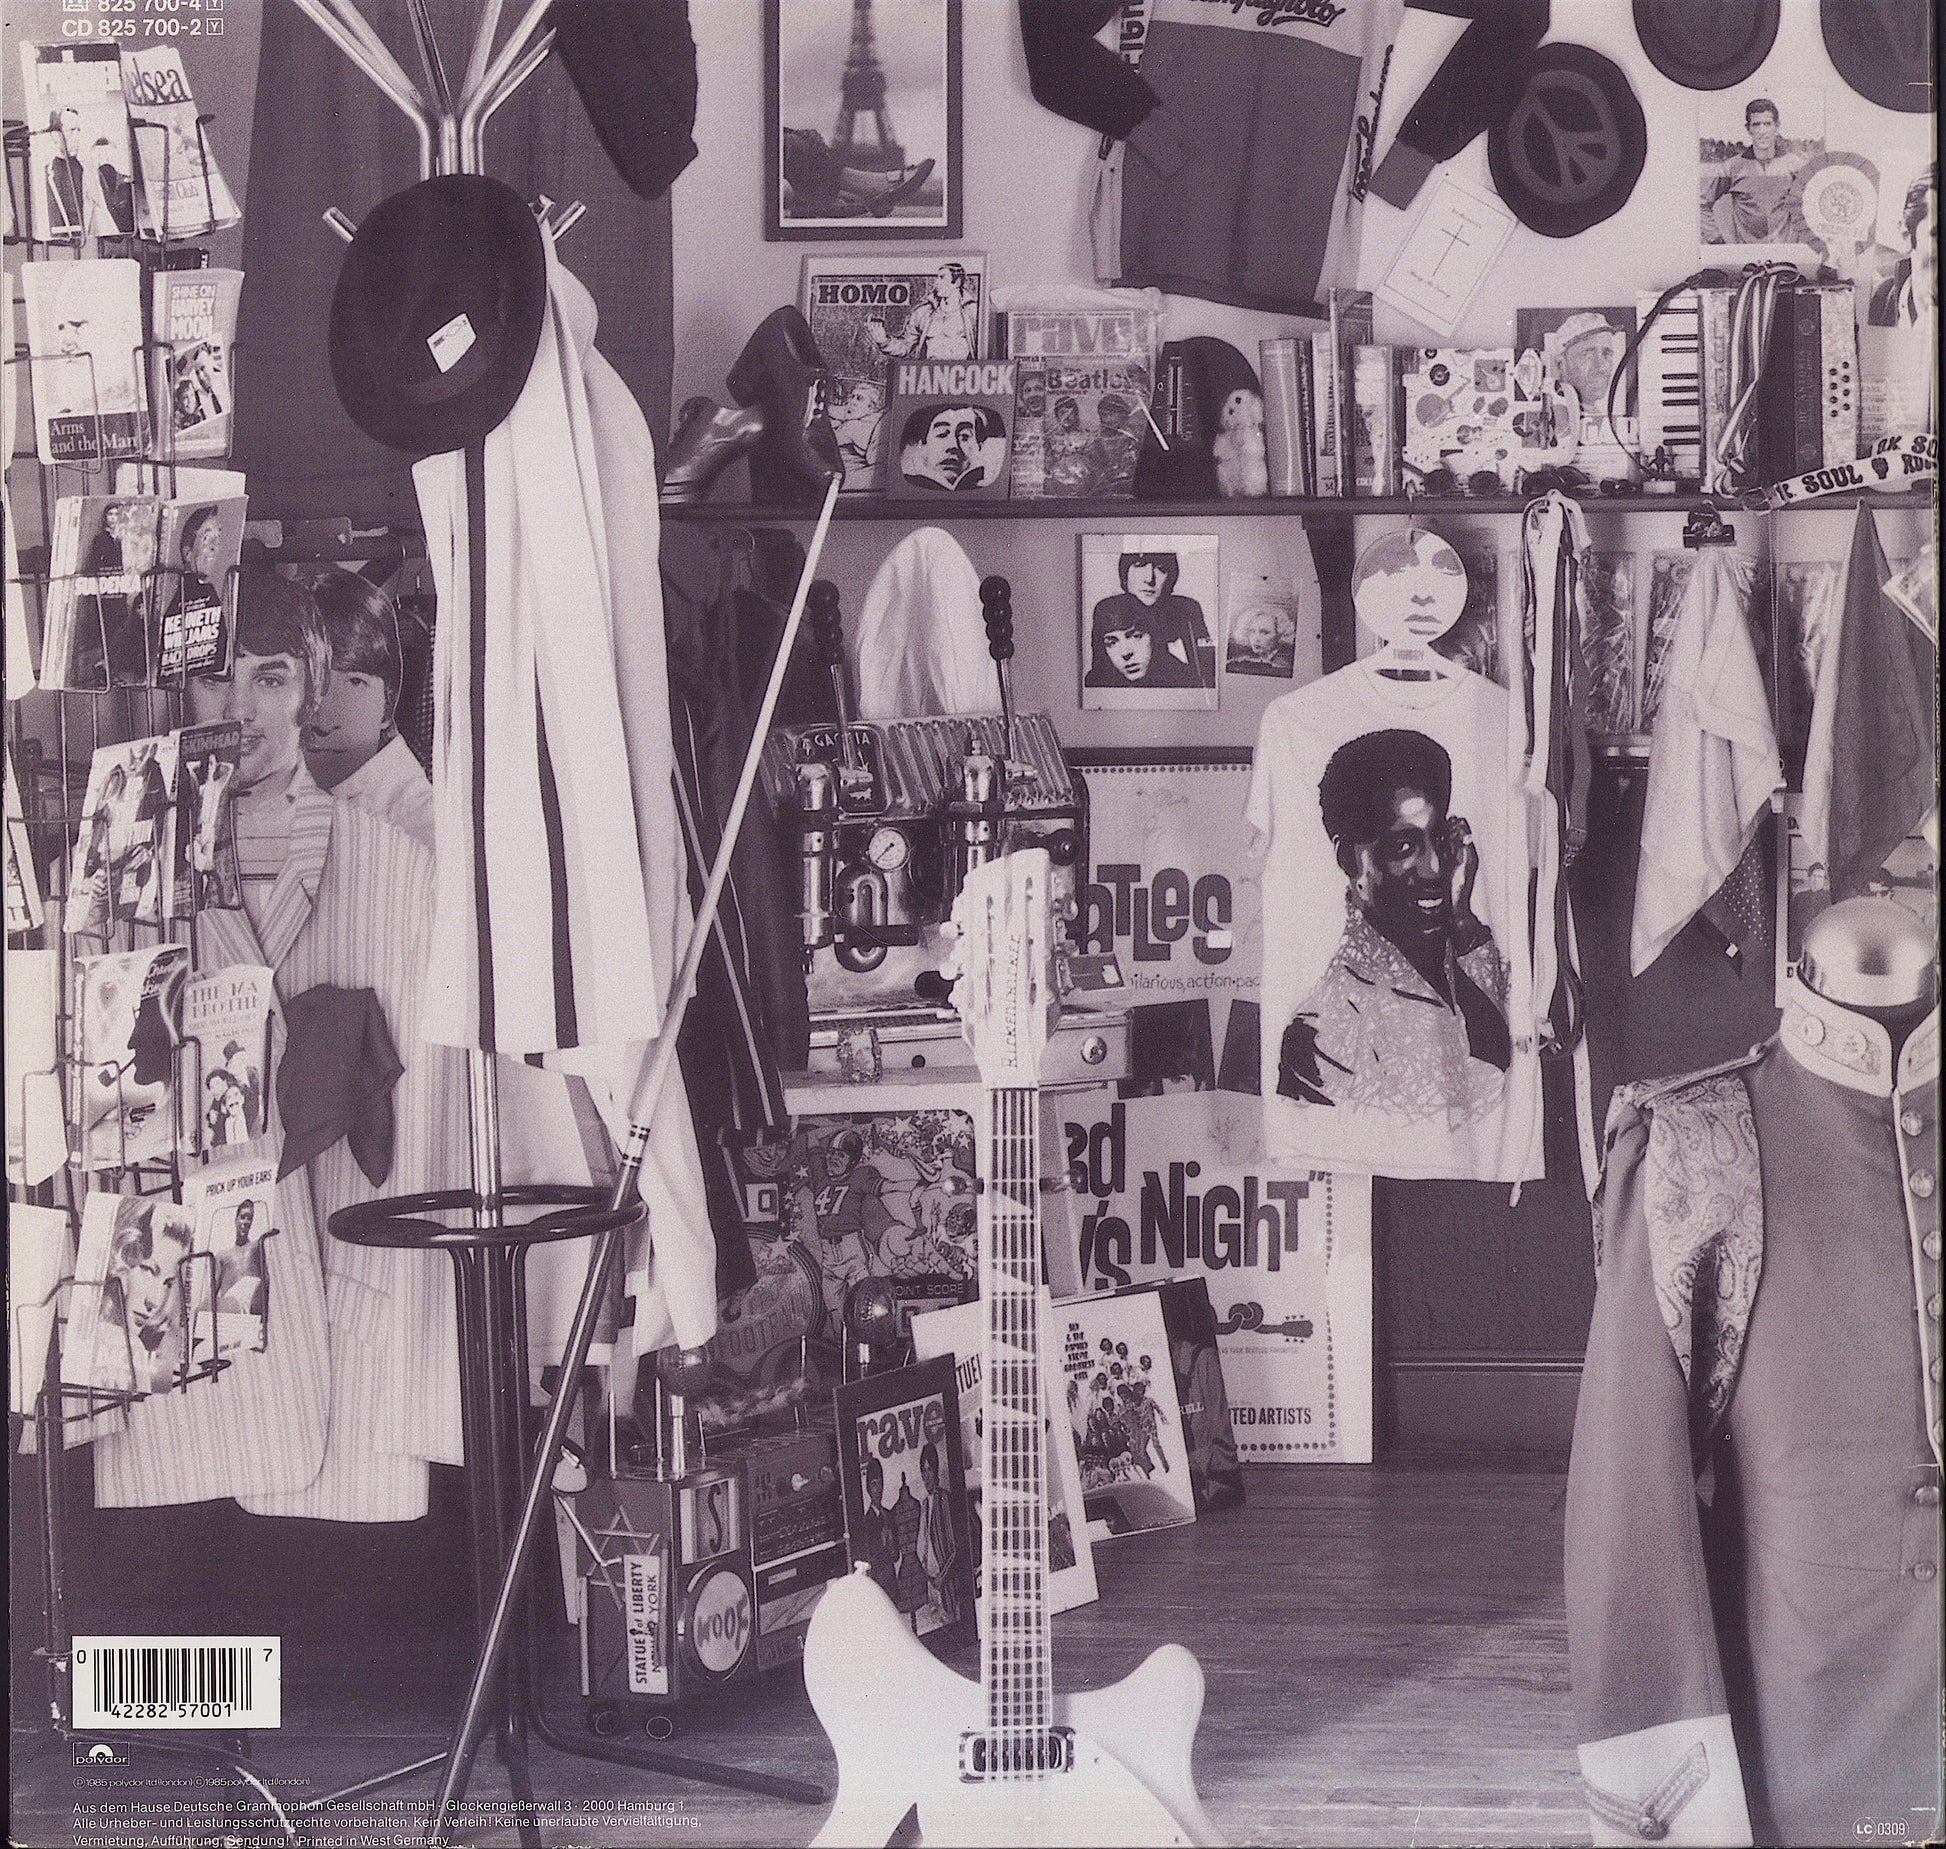 The Style Council ‎- Our Favourite Shop Vinyl LP